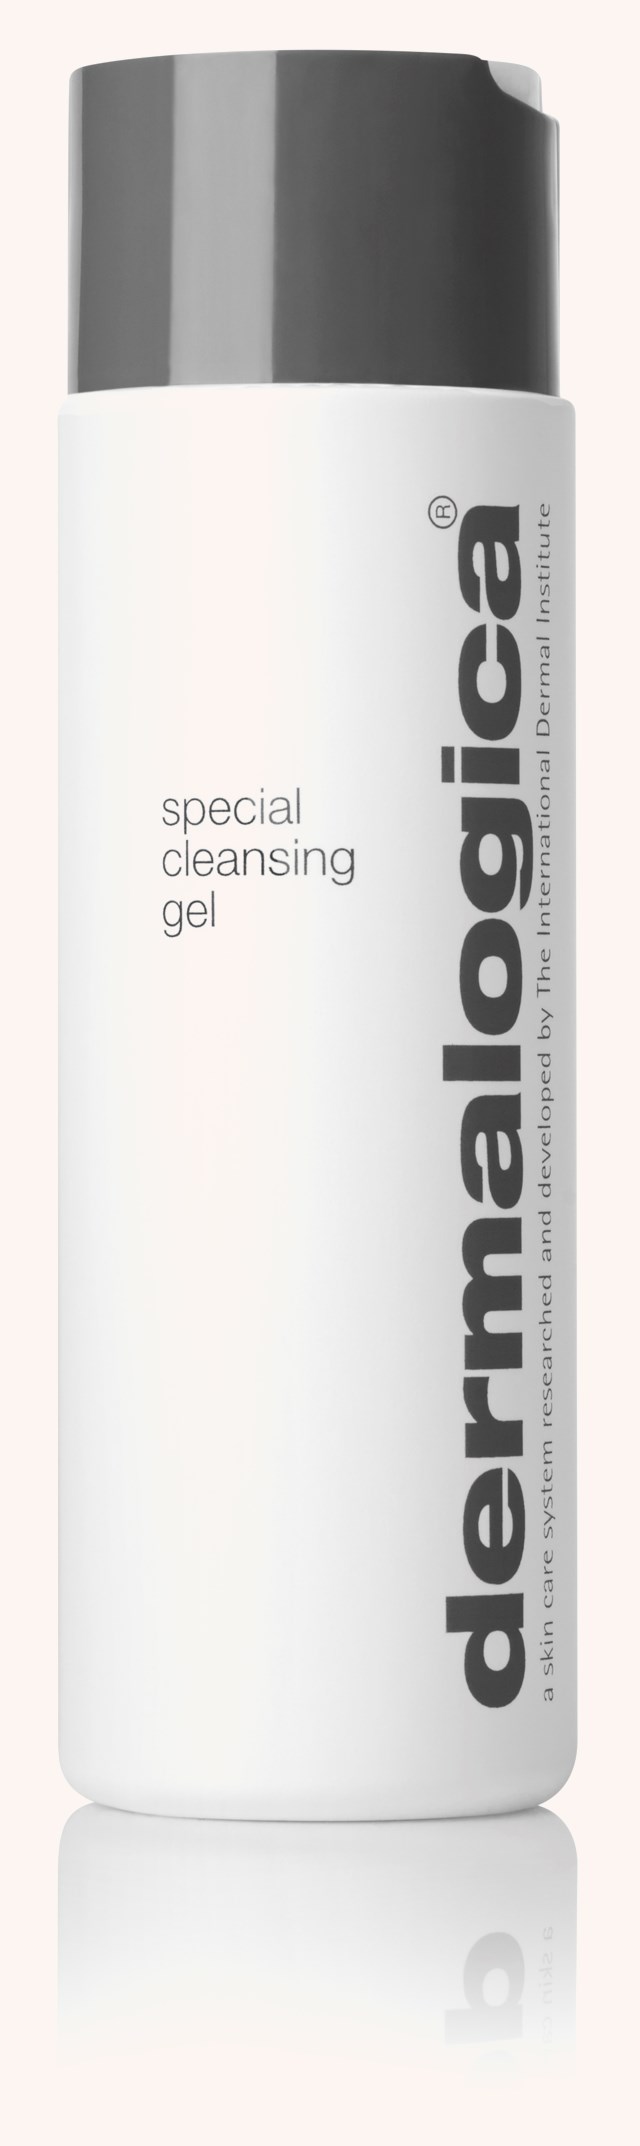 Special Cleansing Gel 250 ml